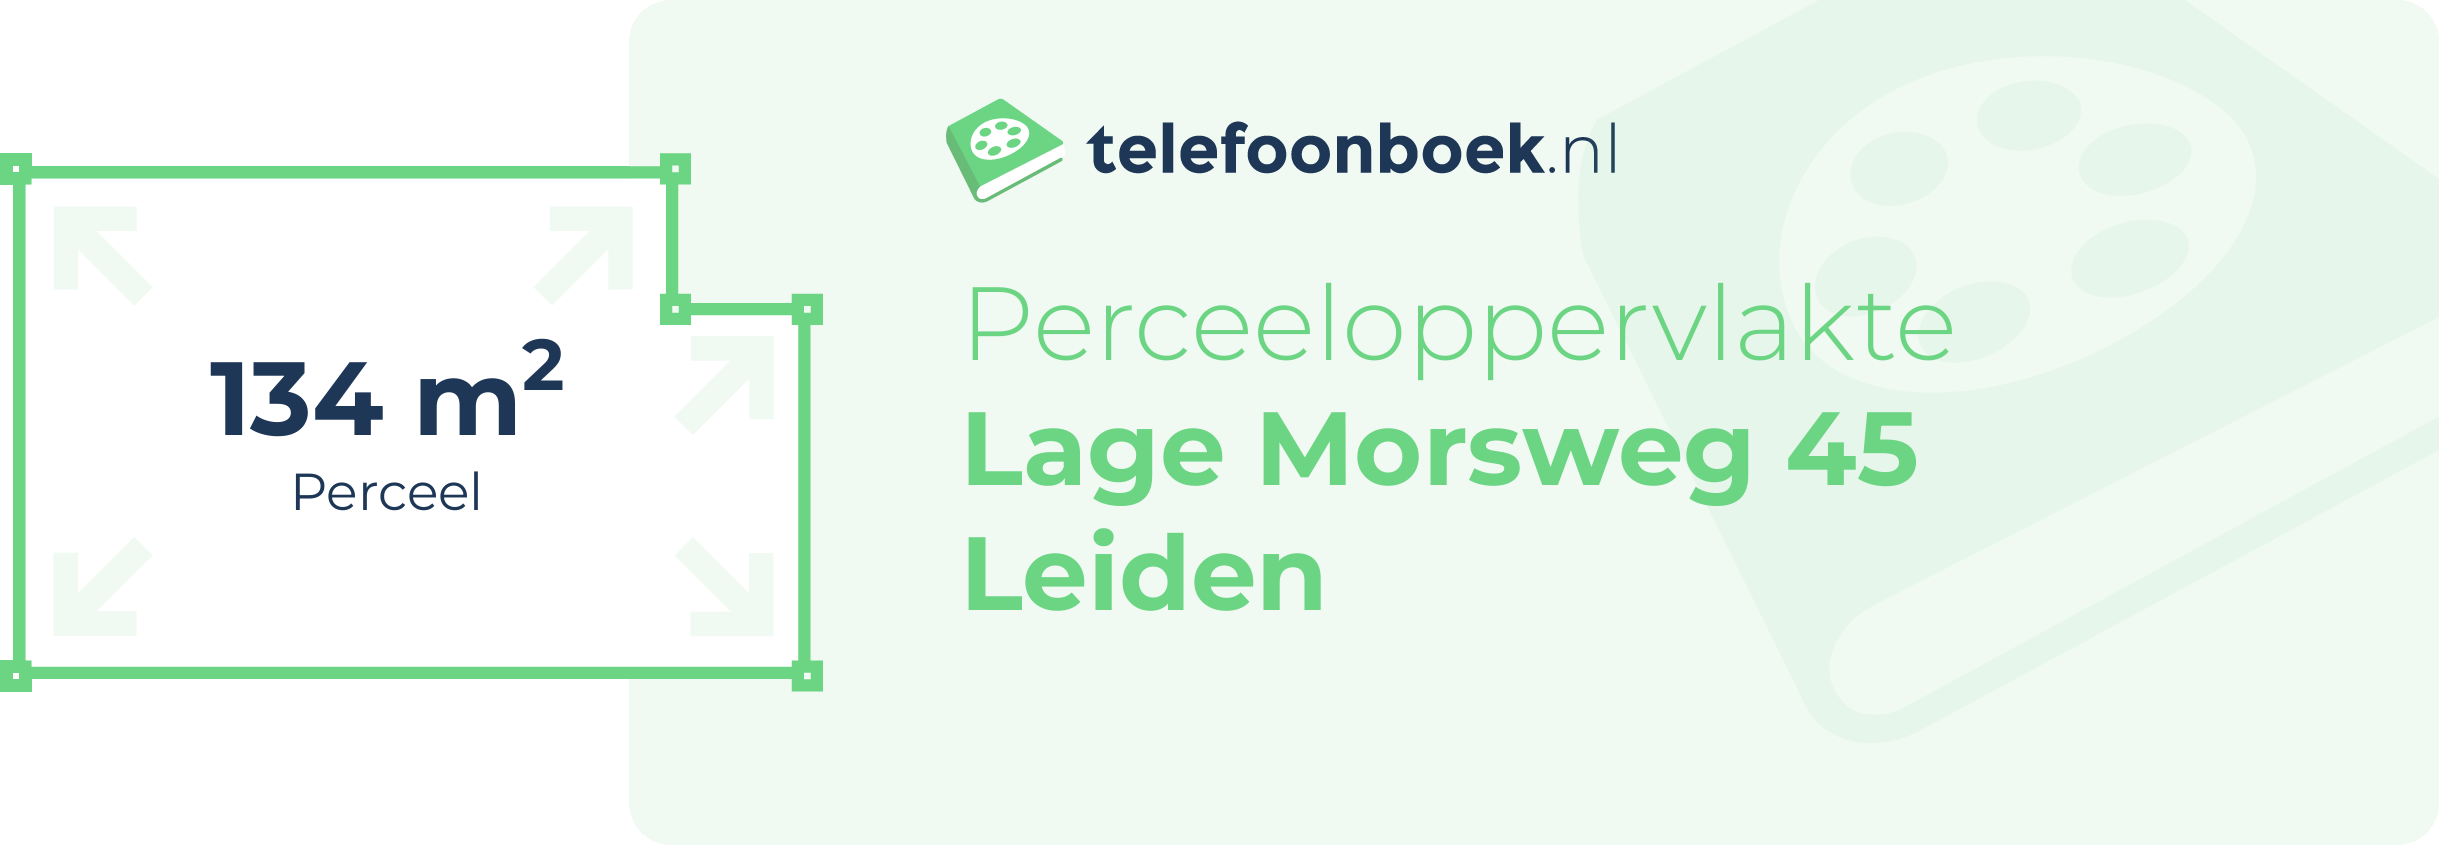 Perceeloppervlakte Lage Morsweg 45 Leiden